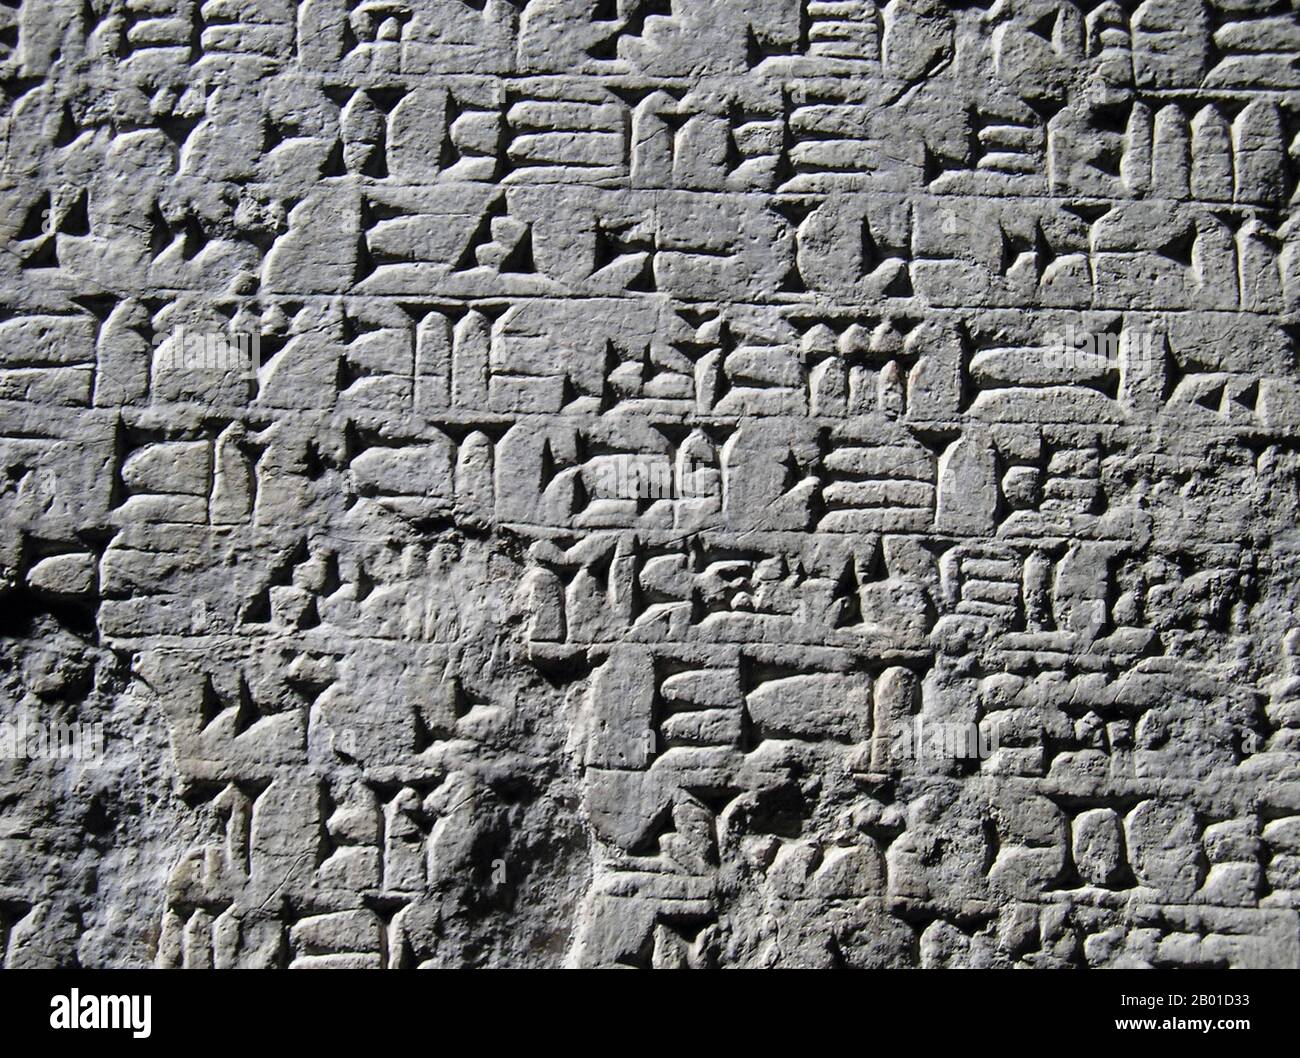 Irak: Détail de l'écriture du cuneiform Akkadian, c. 2500 BCE. Le script cuneiform est l'une des formes connues les plus anciennes d'expression écrite. Émergeant à Sumer autour du 30th siècle avant JC, avec des prédécesseurs atteignant la fin du 4th millénaire (la période Uruk IV), l'écriture cuneiform a commencé comme un système de pictogrammes. Dans les trois millénaires le script s'est étendu, les représentations picturales sont devenues simplifiées et plus abstraites comme le nombre de caractères en usage a également augmenté progressivement, passant d'environ 1 000 caractères uniques dans le début de l'âge de bronze à environ 400 caractères uniques dans l'âge de bronze tardif. Banque D'Images